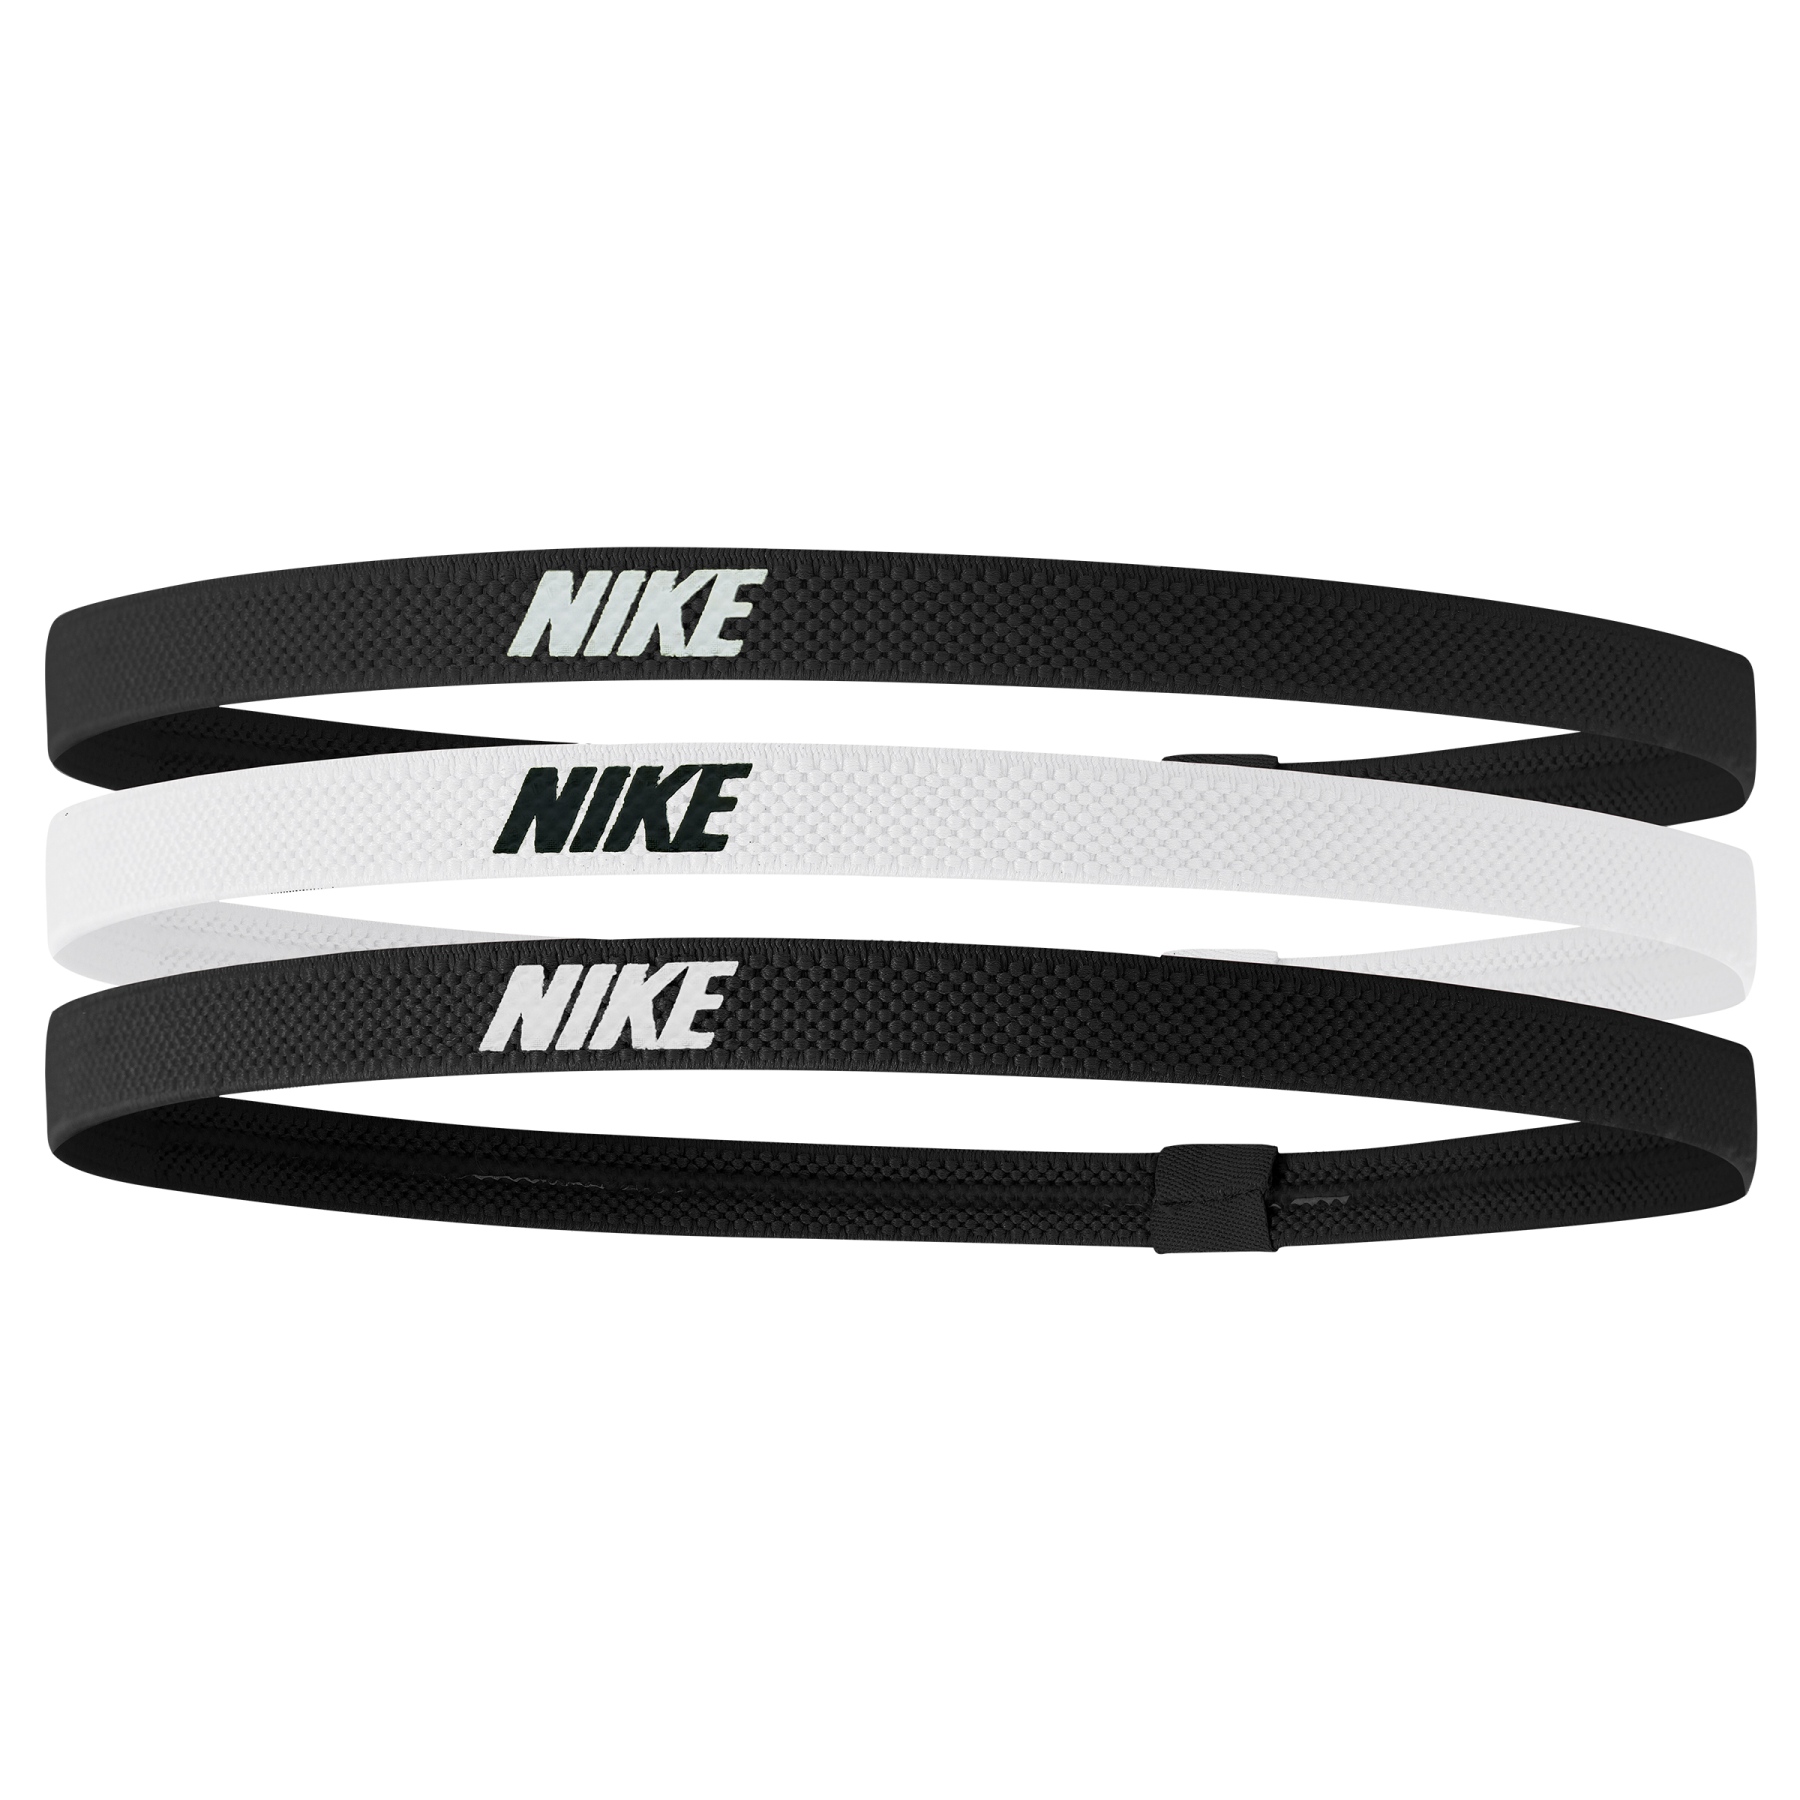 Produktbild von Nike Elastic Haarband 2.0 - 3er Pack - black/white/black 036